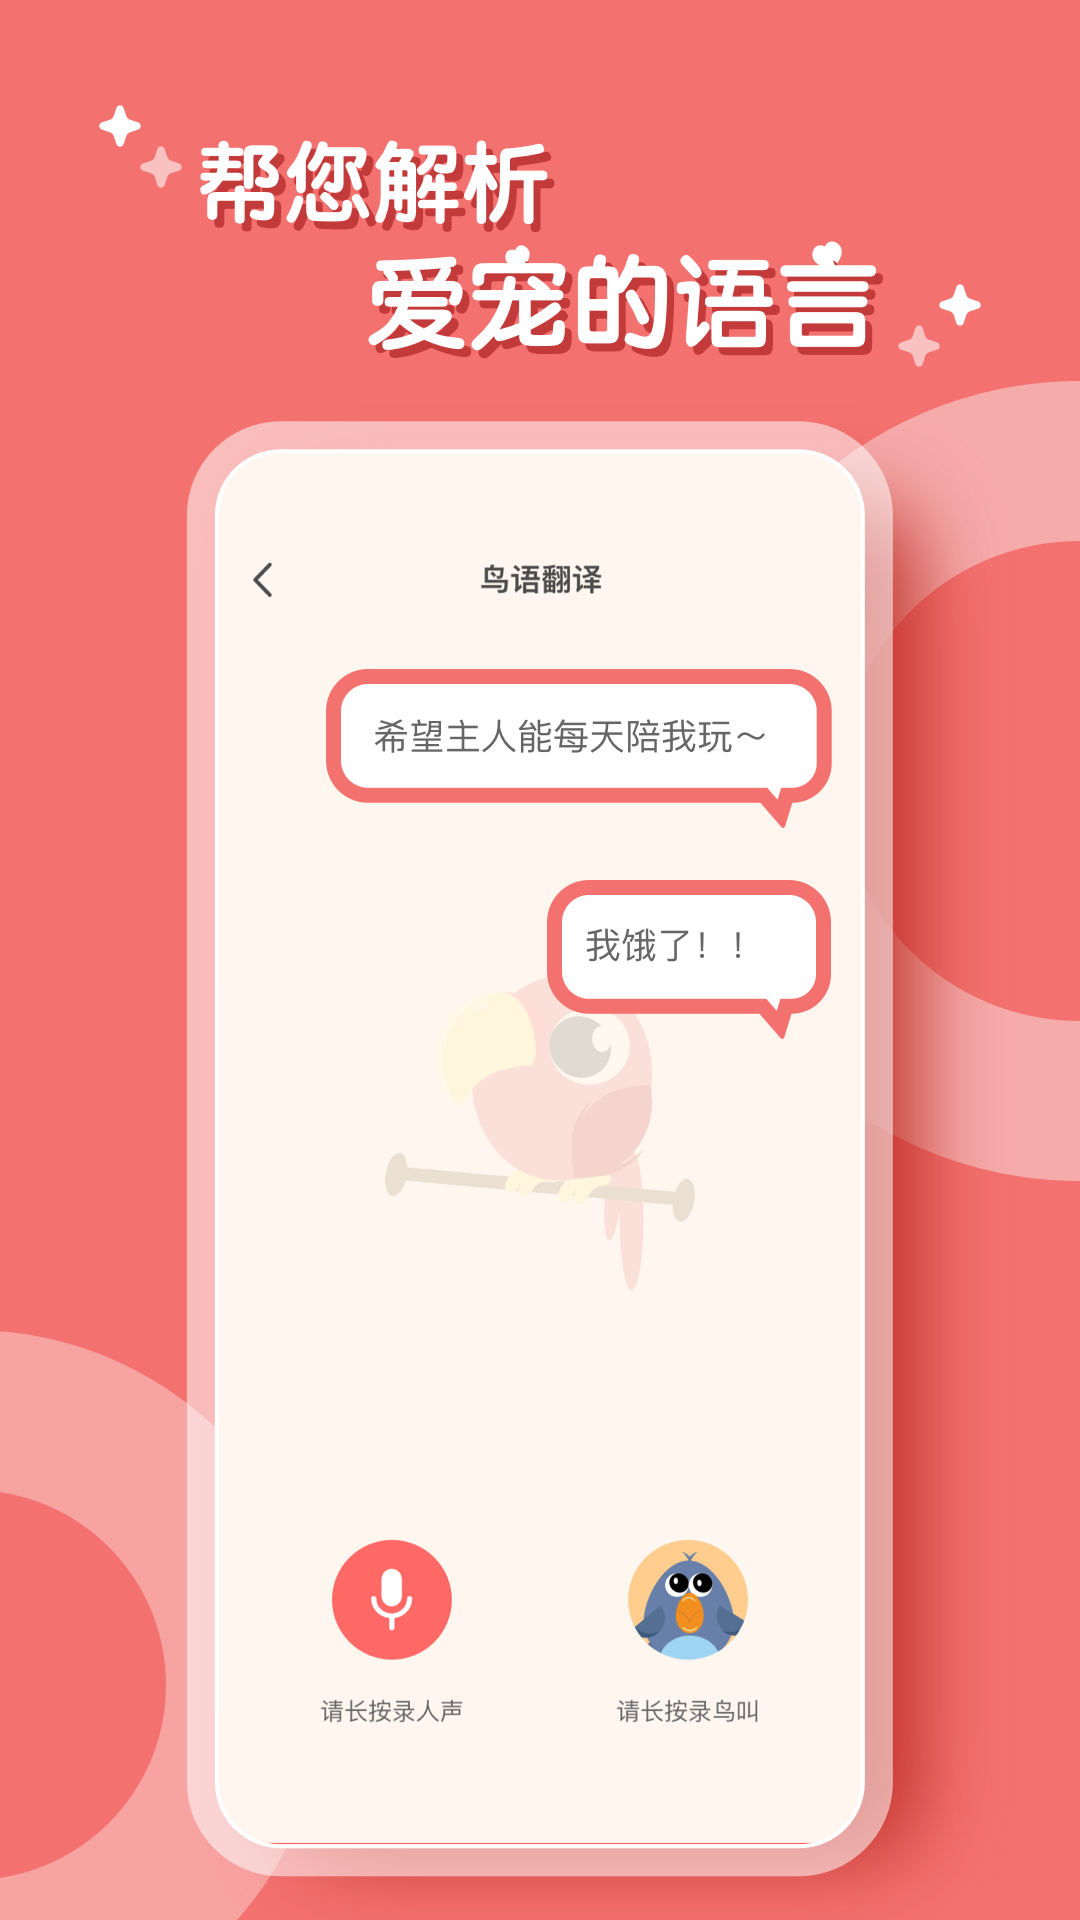 鹦鹉翻译器中文版 截图1